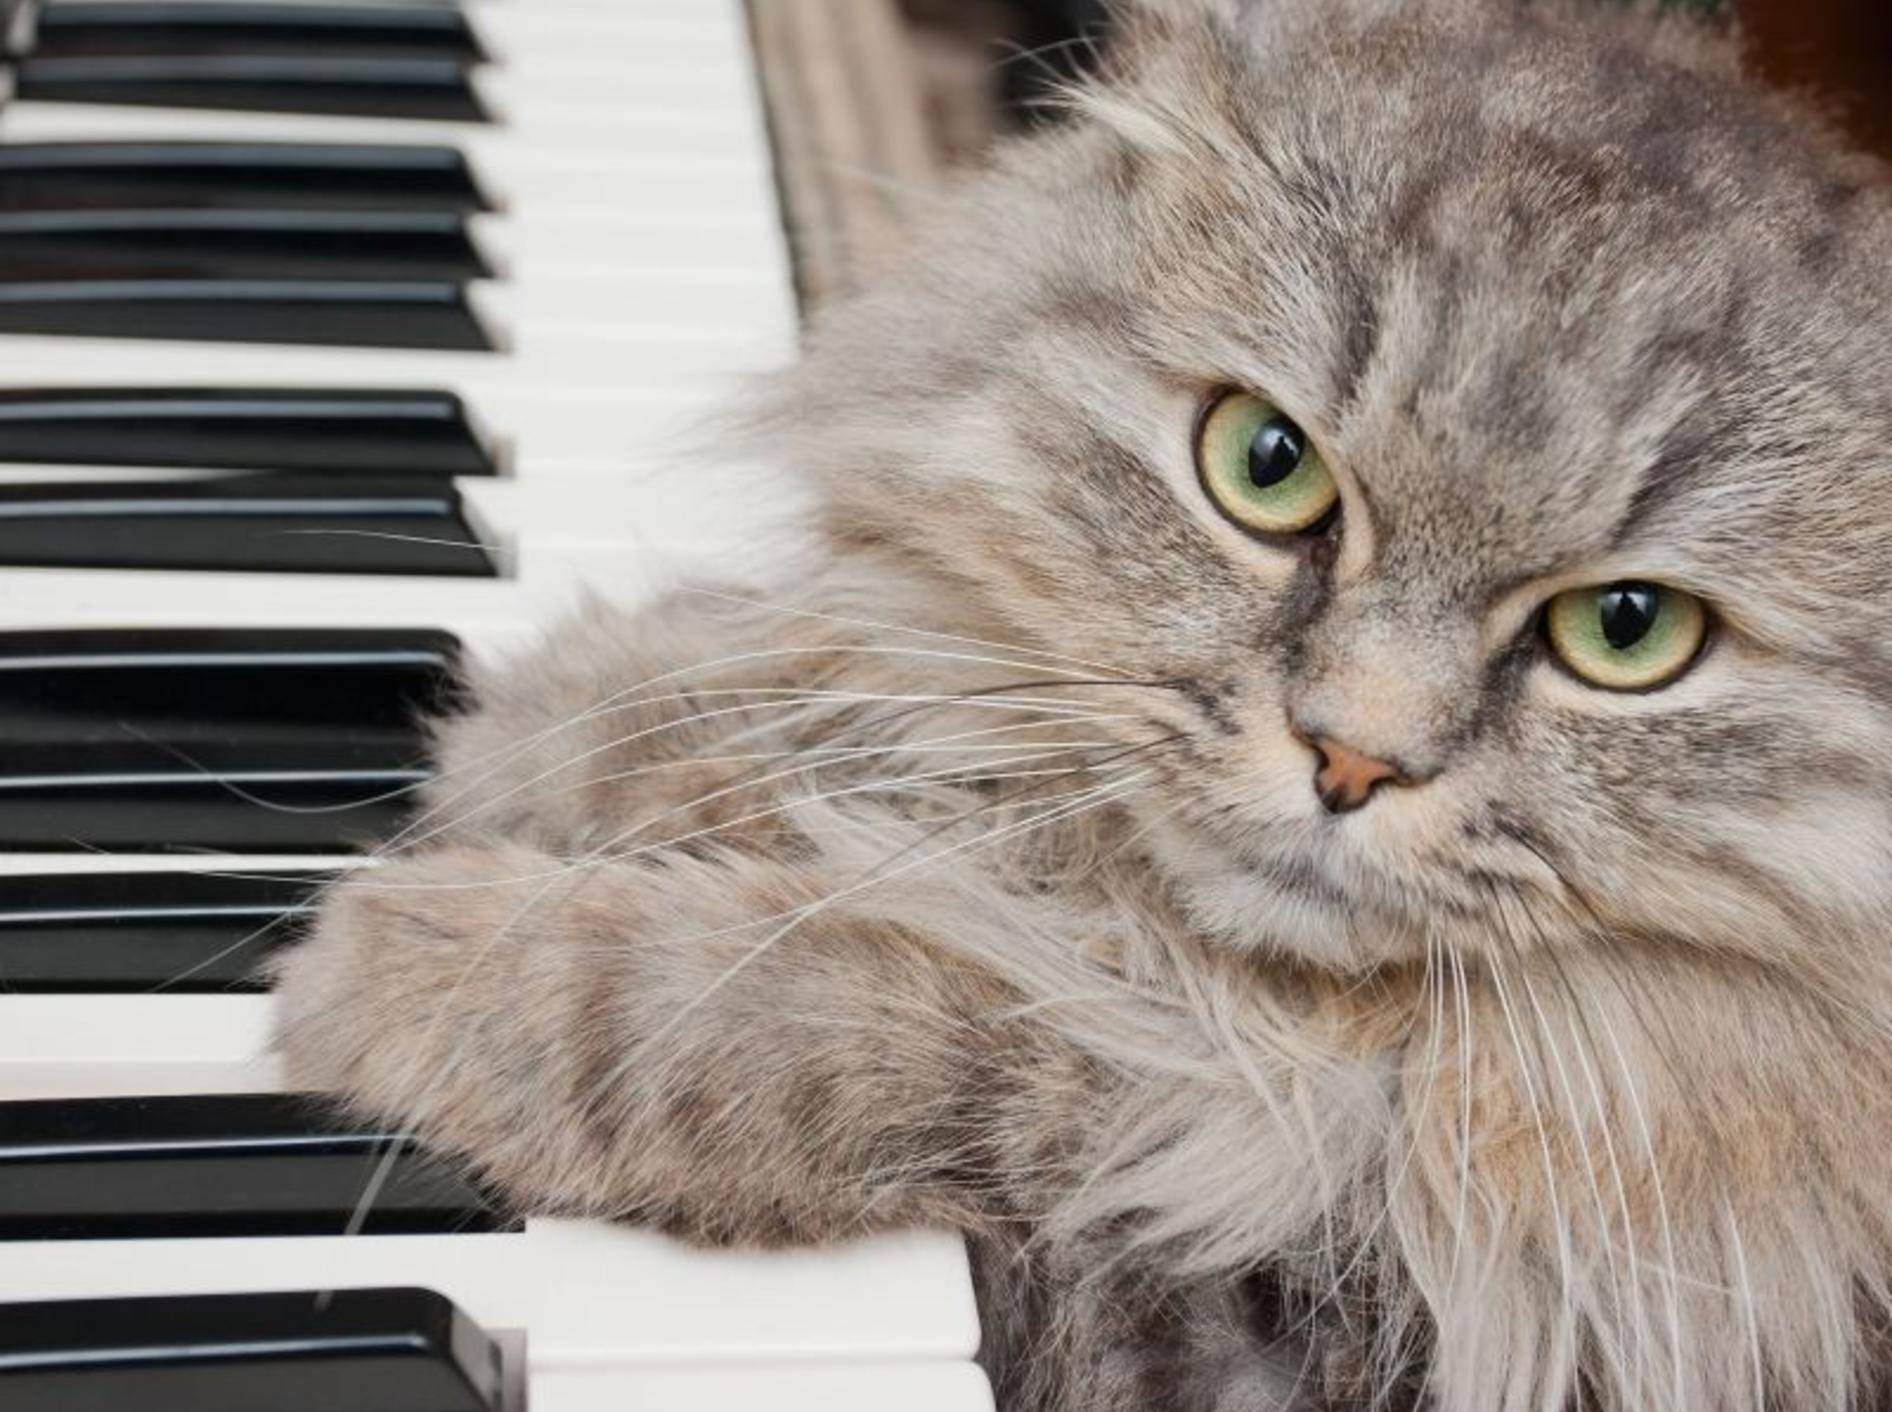 "Seid mal ehrlich, spiel ich gut?" Flauschige Katze am Klavier — Bild: Shutterstock / Telekhovskyi